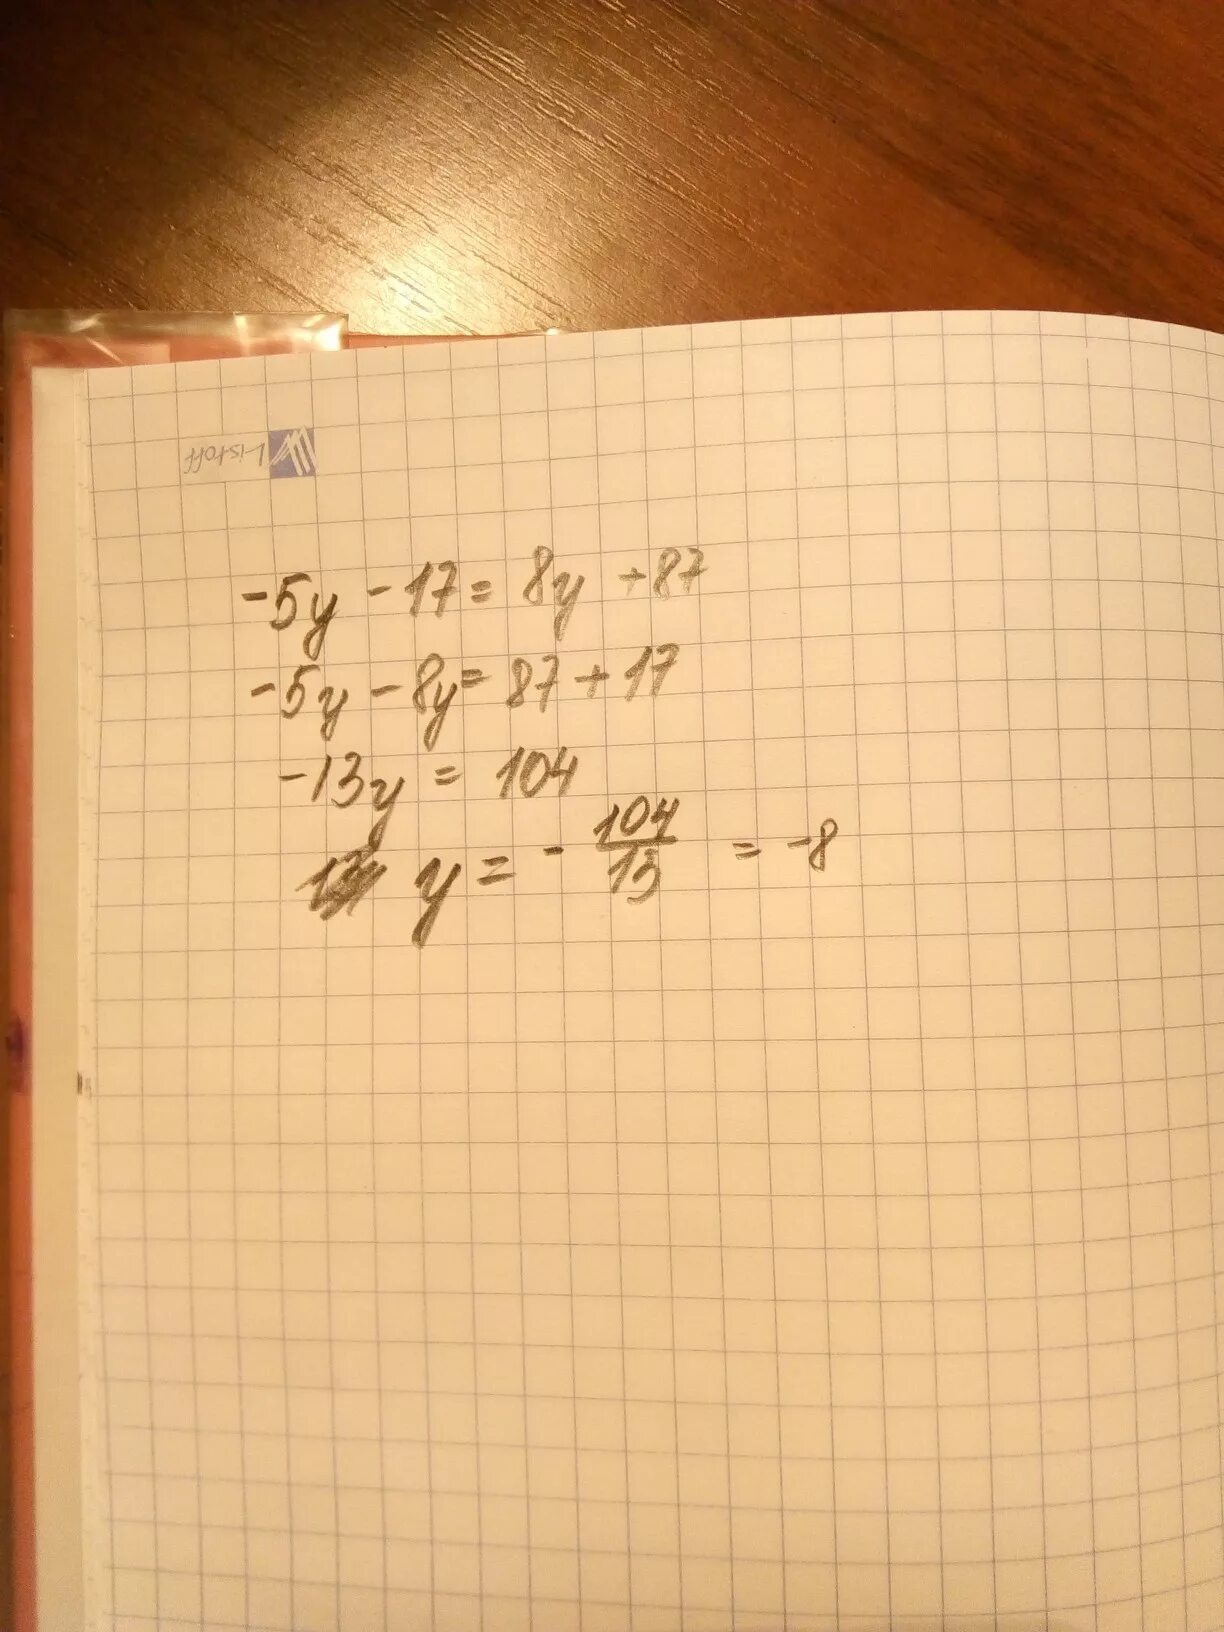 Решите уравнение 17 b 9. Уравнение 17y+29-5y 137. Решение уравнения 5y-8=y-(4-3y). Решить уравнение 17y+29-5y=137. 5y+8y+22 165.